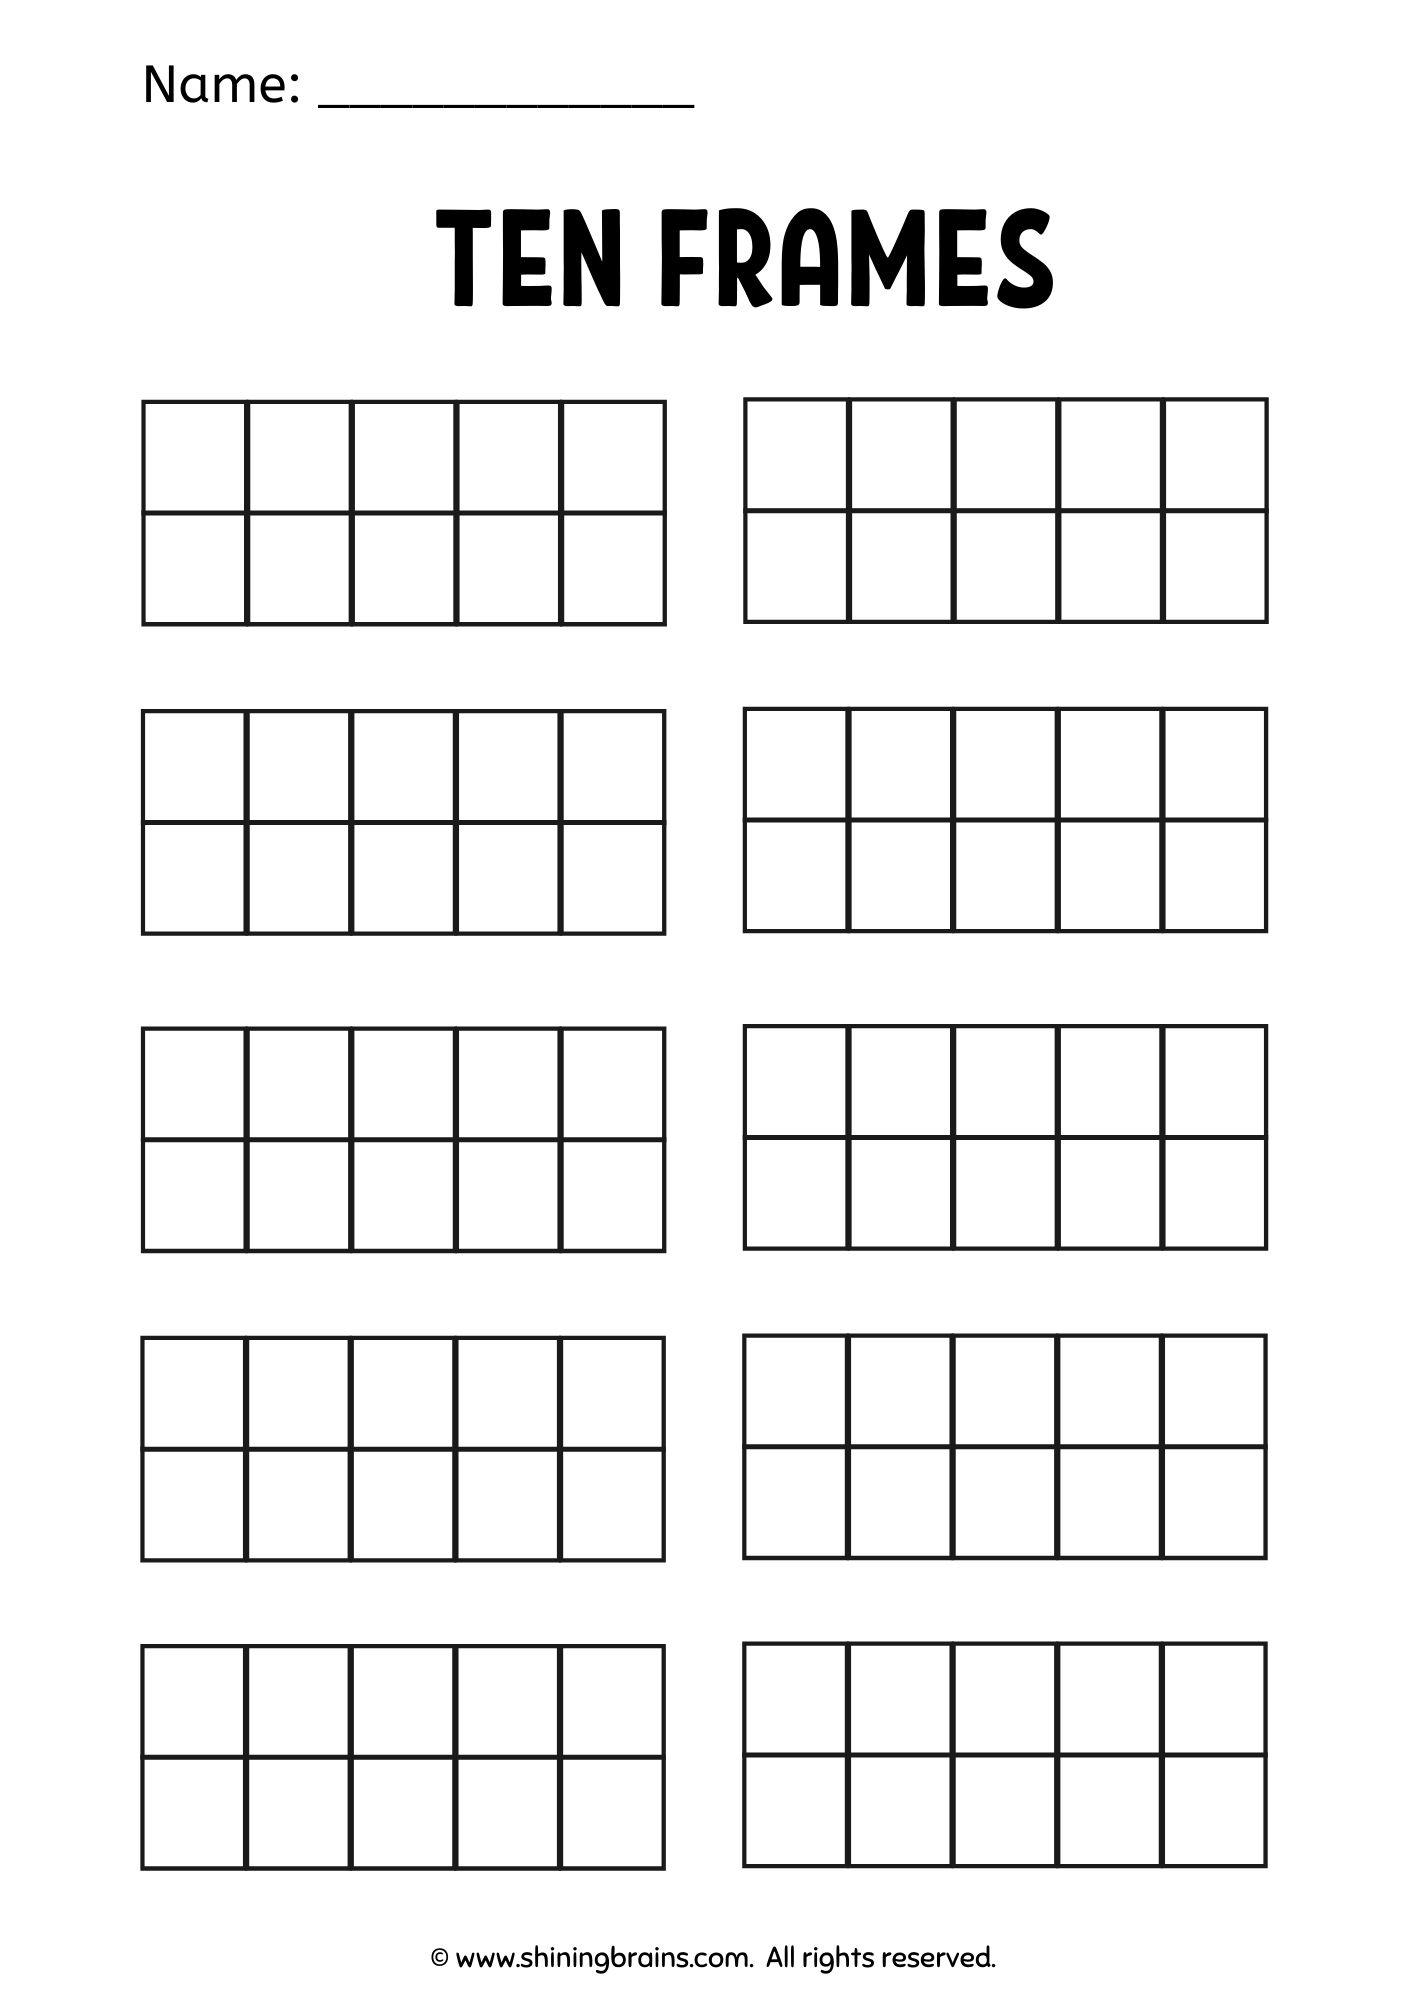 ten-frames-worksheets-and-printables-math-frames